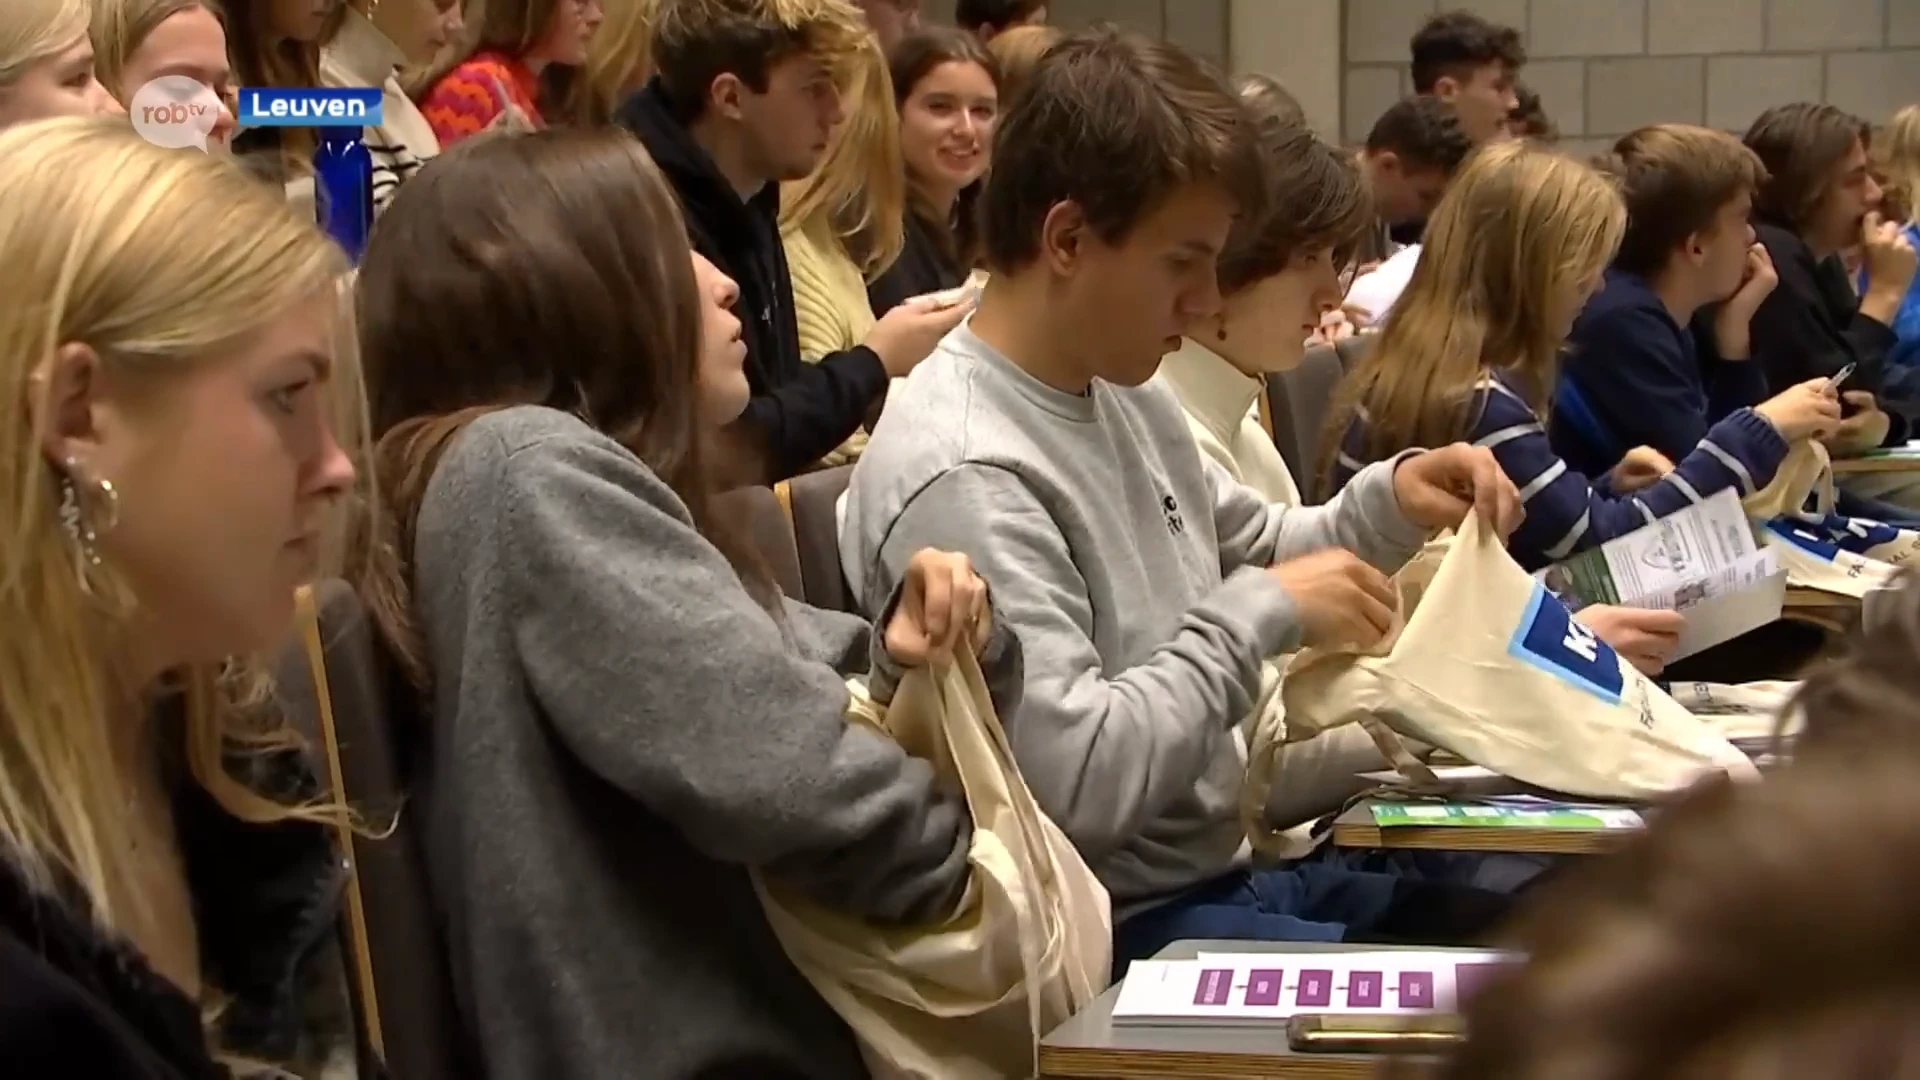 Eerstejaarsstudenten KU Leuven worden één week eerder op universiteit verwacht